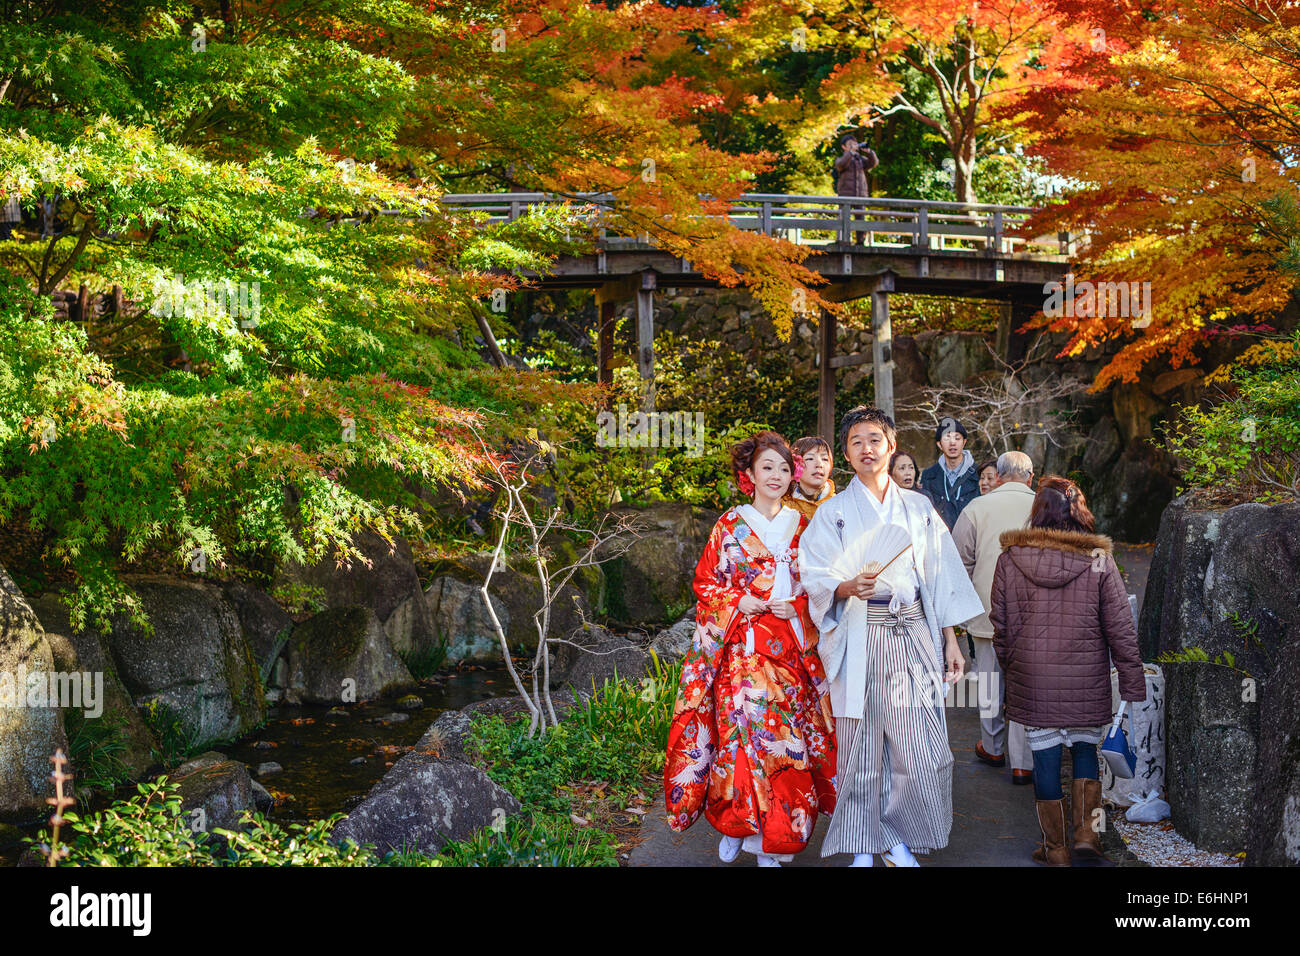 ingen forbindelse indsats lov Crowds at Tokugawa Gardens in Nagoya, japan Stock Photo - Alamy